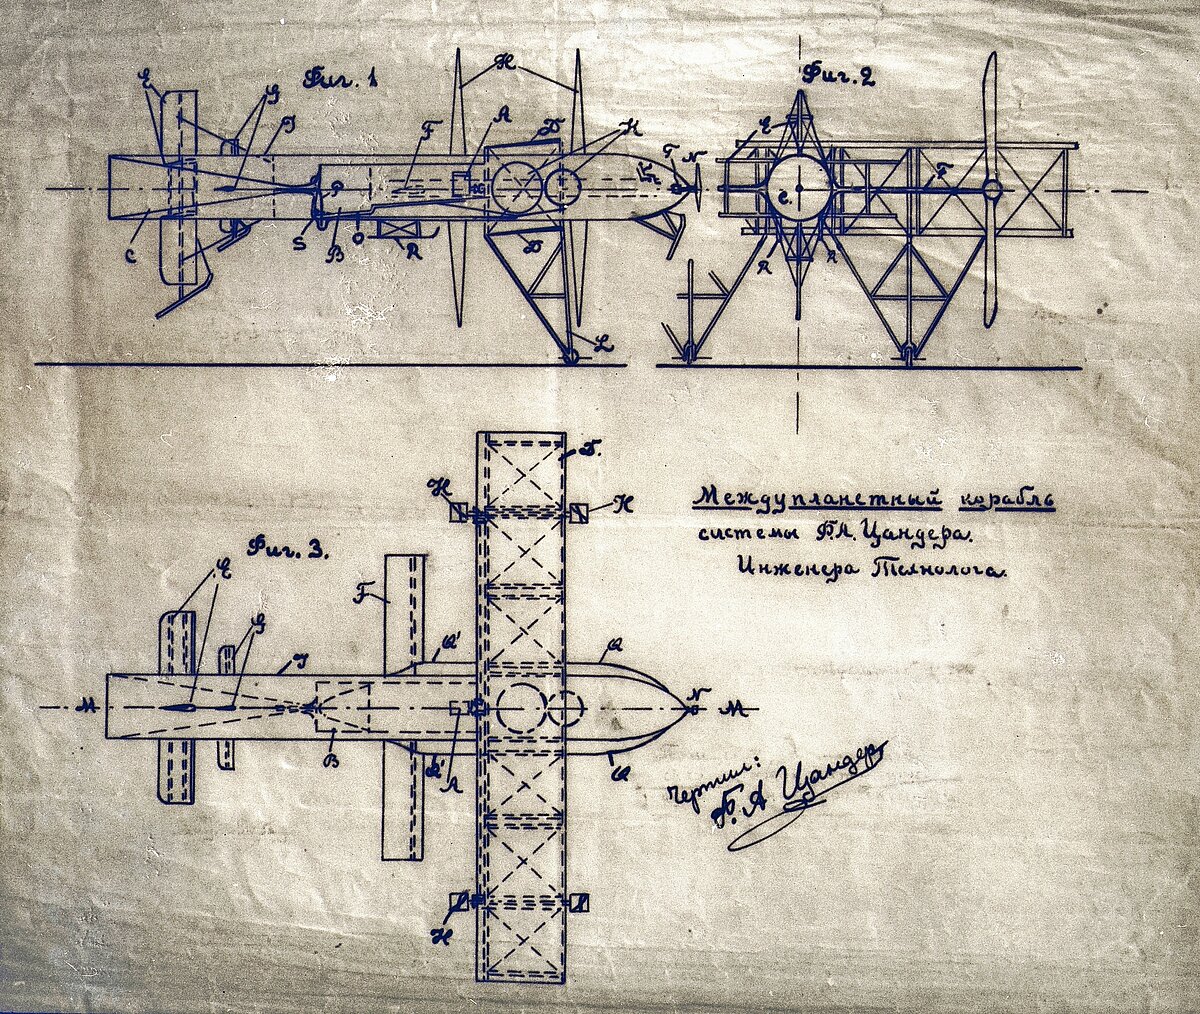 Candera konstrukcijas kosmosa kuģa - aeroplāna patenta iesniegums. Attēls no muzeja krājuma